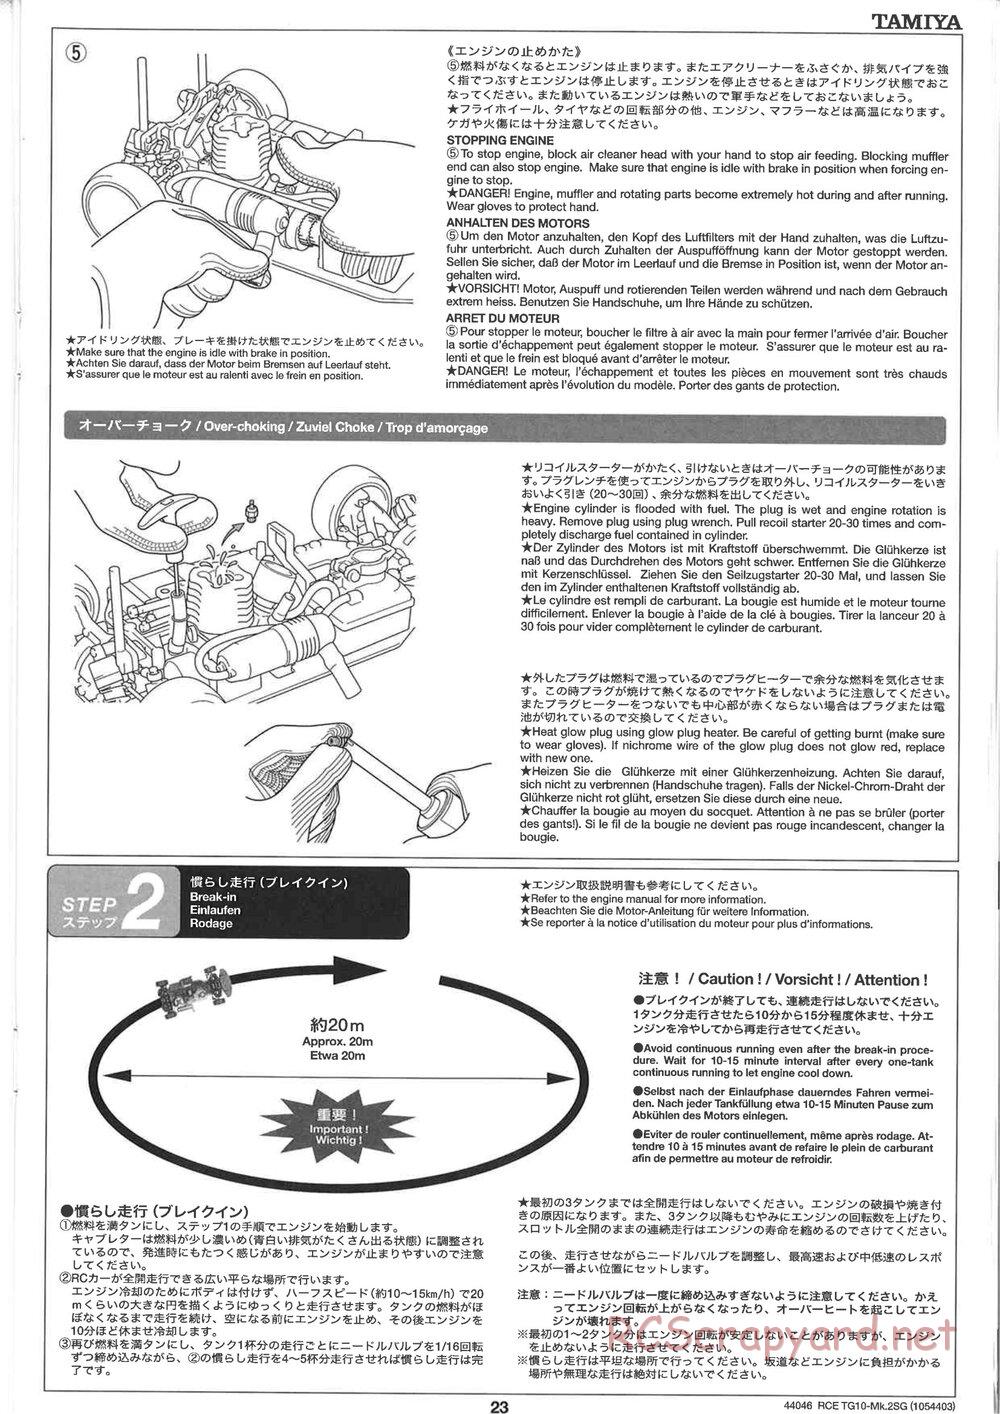 Tamiya - TG10 Mk.2SG Chassis - Manual - Page 23